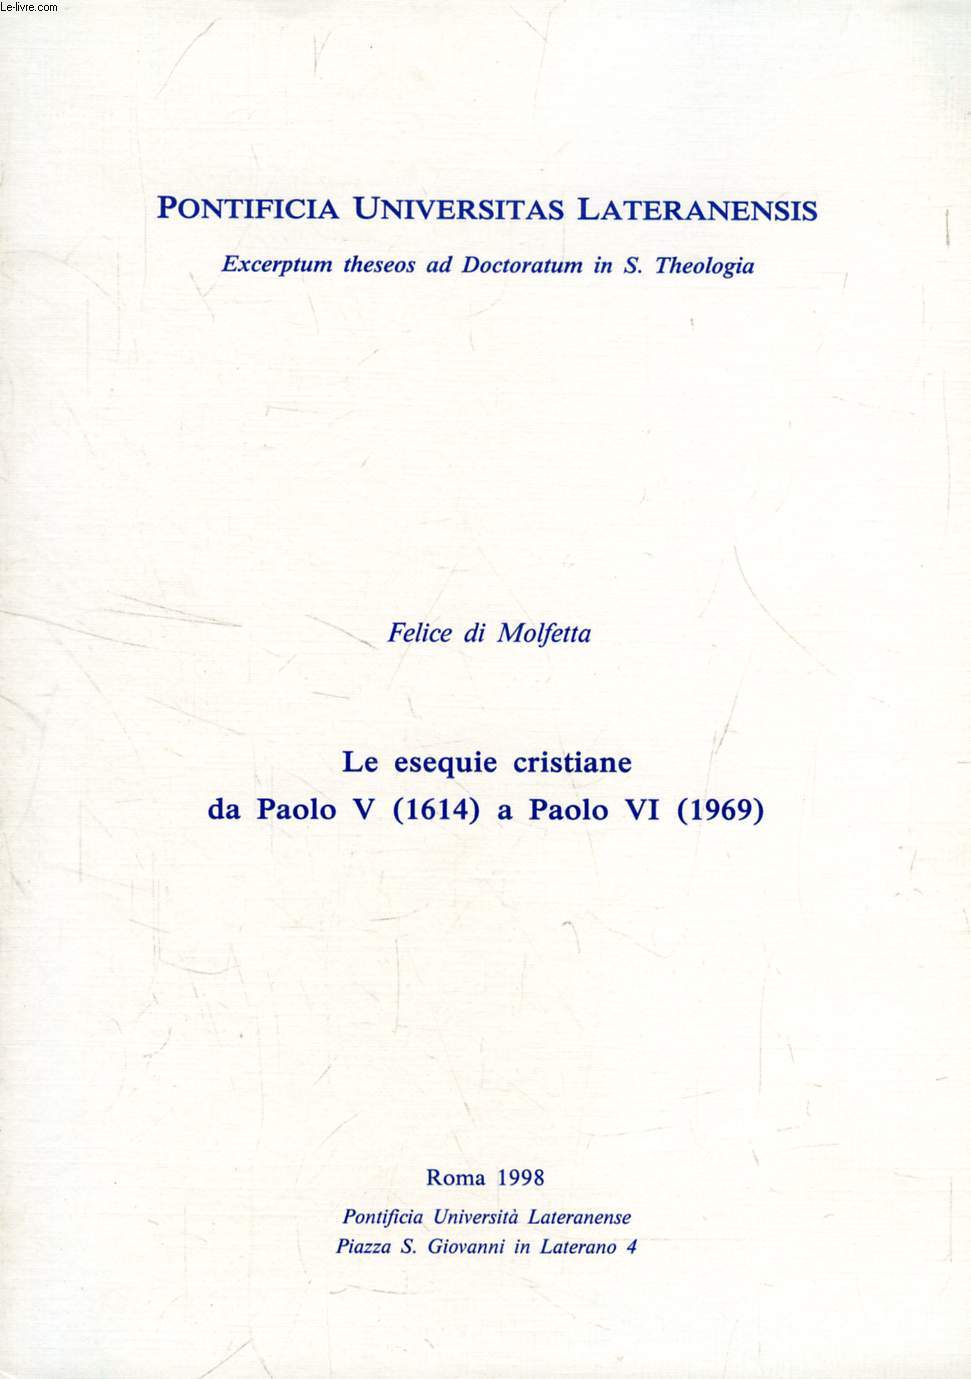 LE ESEQUIE CRISTIANE DA PAOLO V (1614) A PAOLO VI (1969) (EXCERPTUM THESEOS)